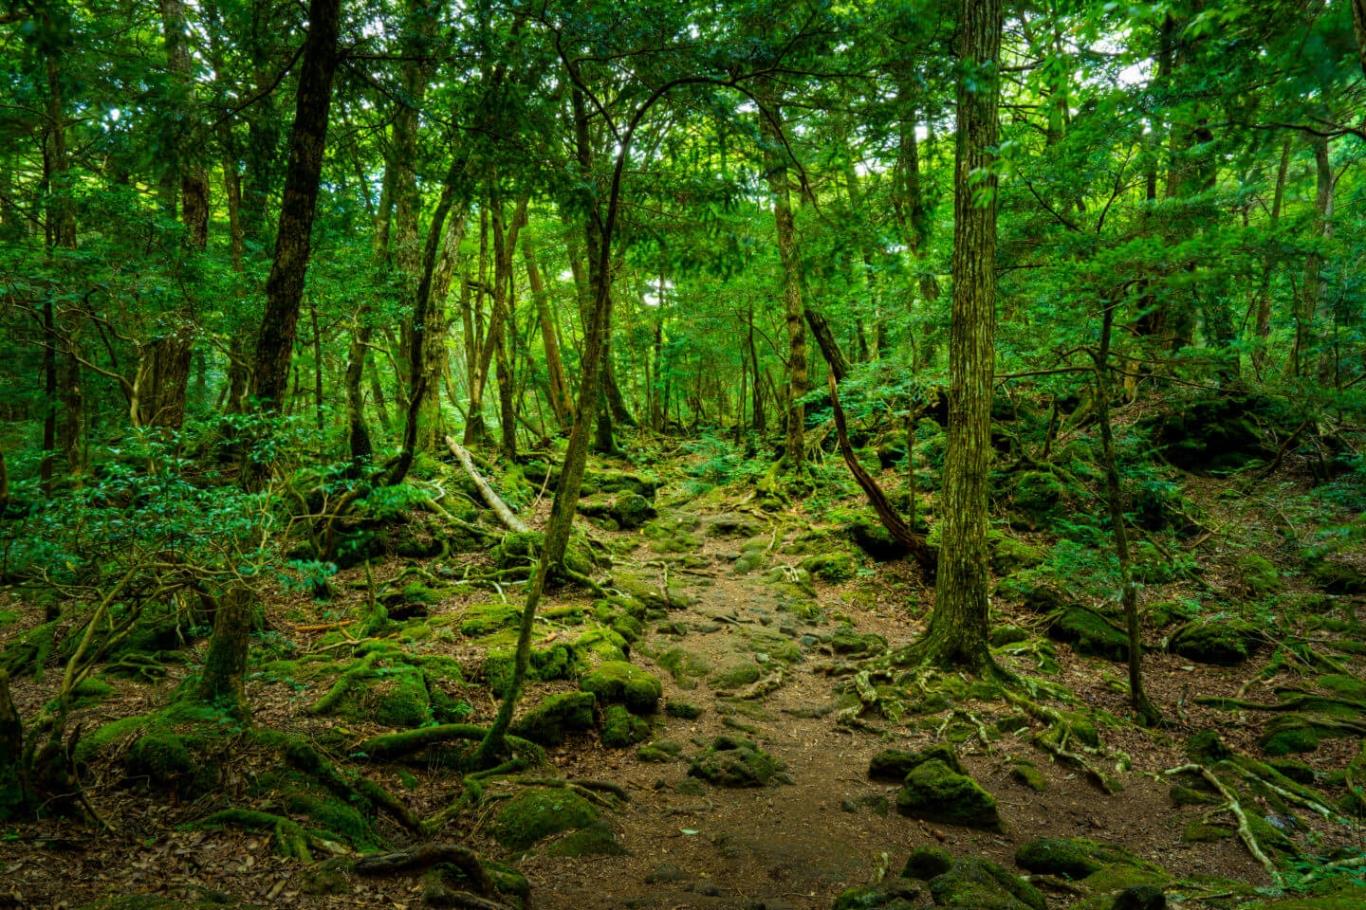 Mê mẩn những khu rừng đẹp như cổ tích trên thế giới | VIETRAVEL